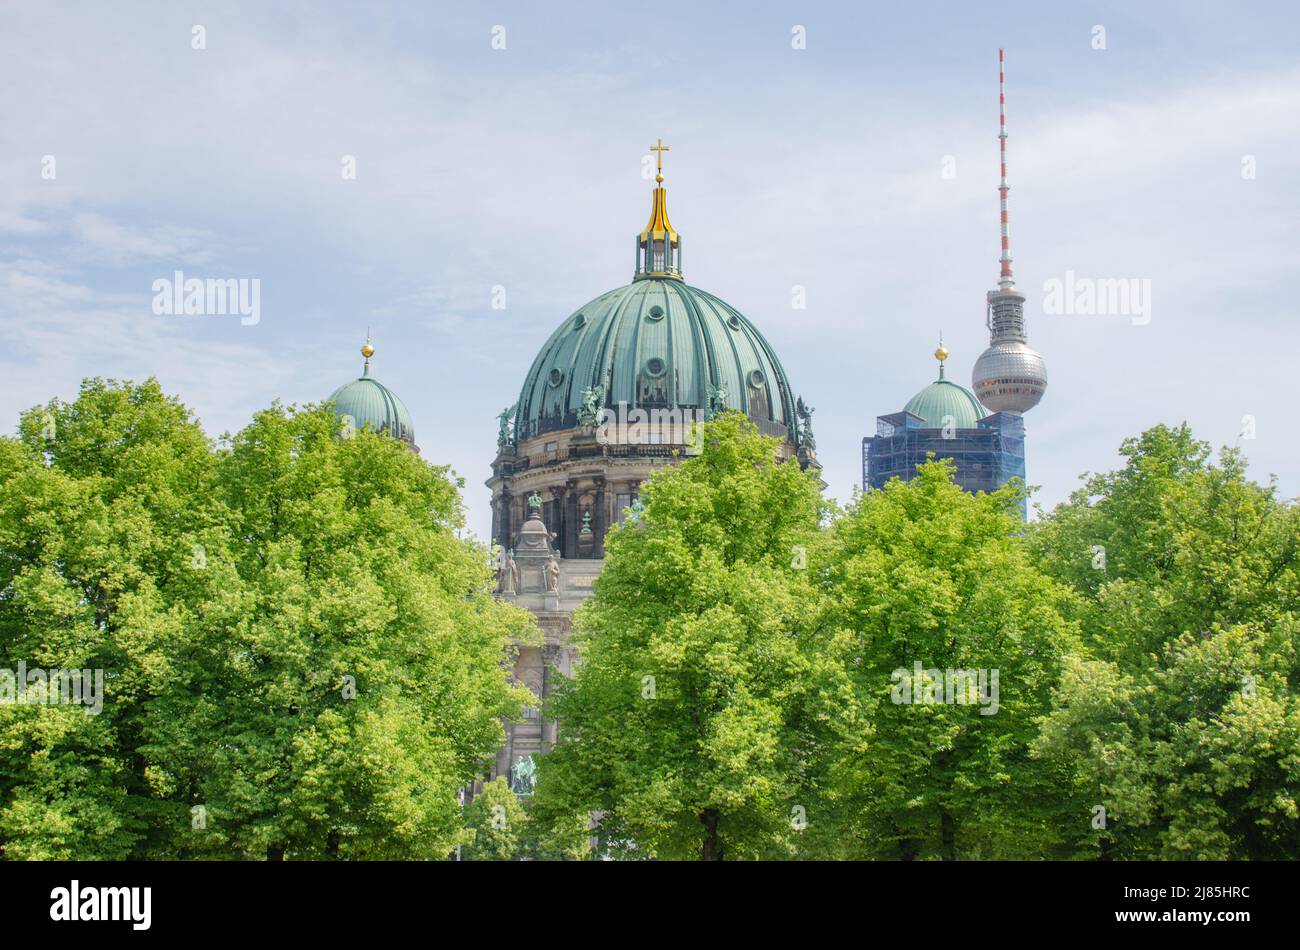 Berlino- Dom: Die Oberpfarr- und Domkirche zu Berlin in der Mitte der Stadt. Besichtigung, Gottesdienste und vielfältige Veranstaltungen Foto Stock